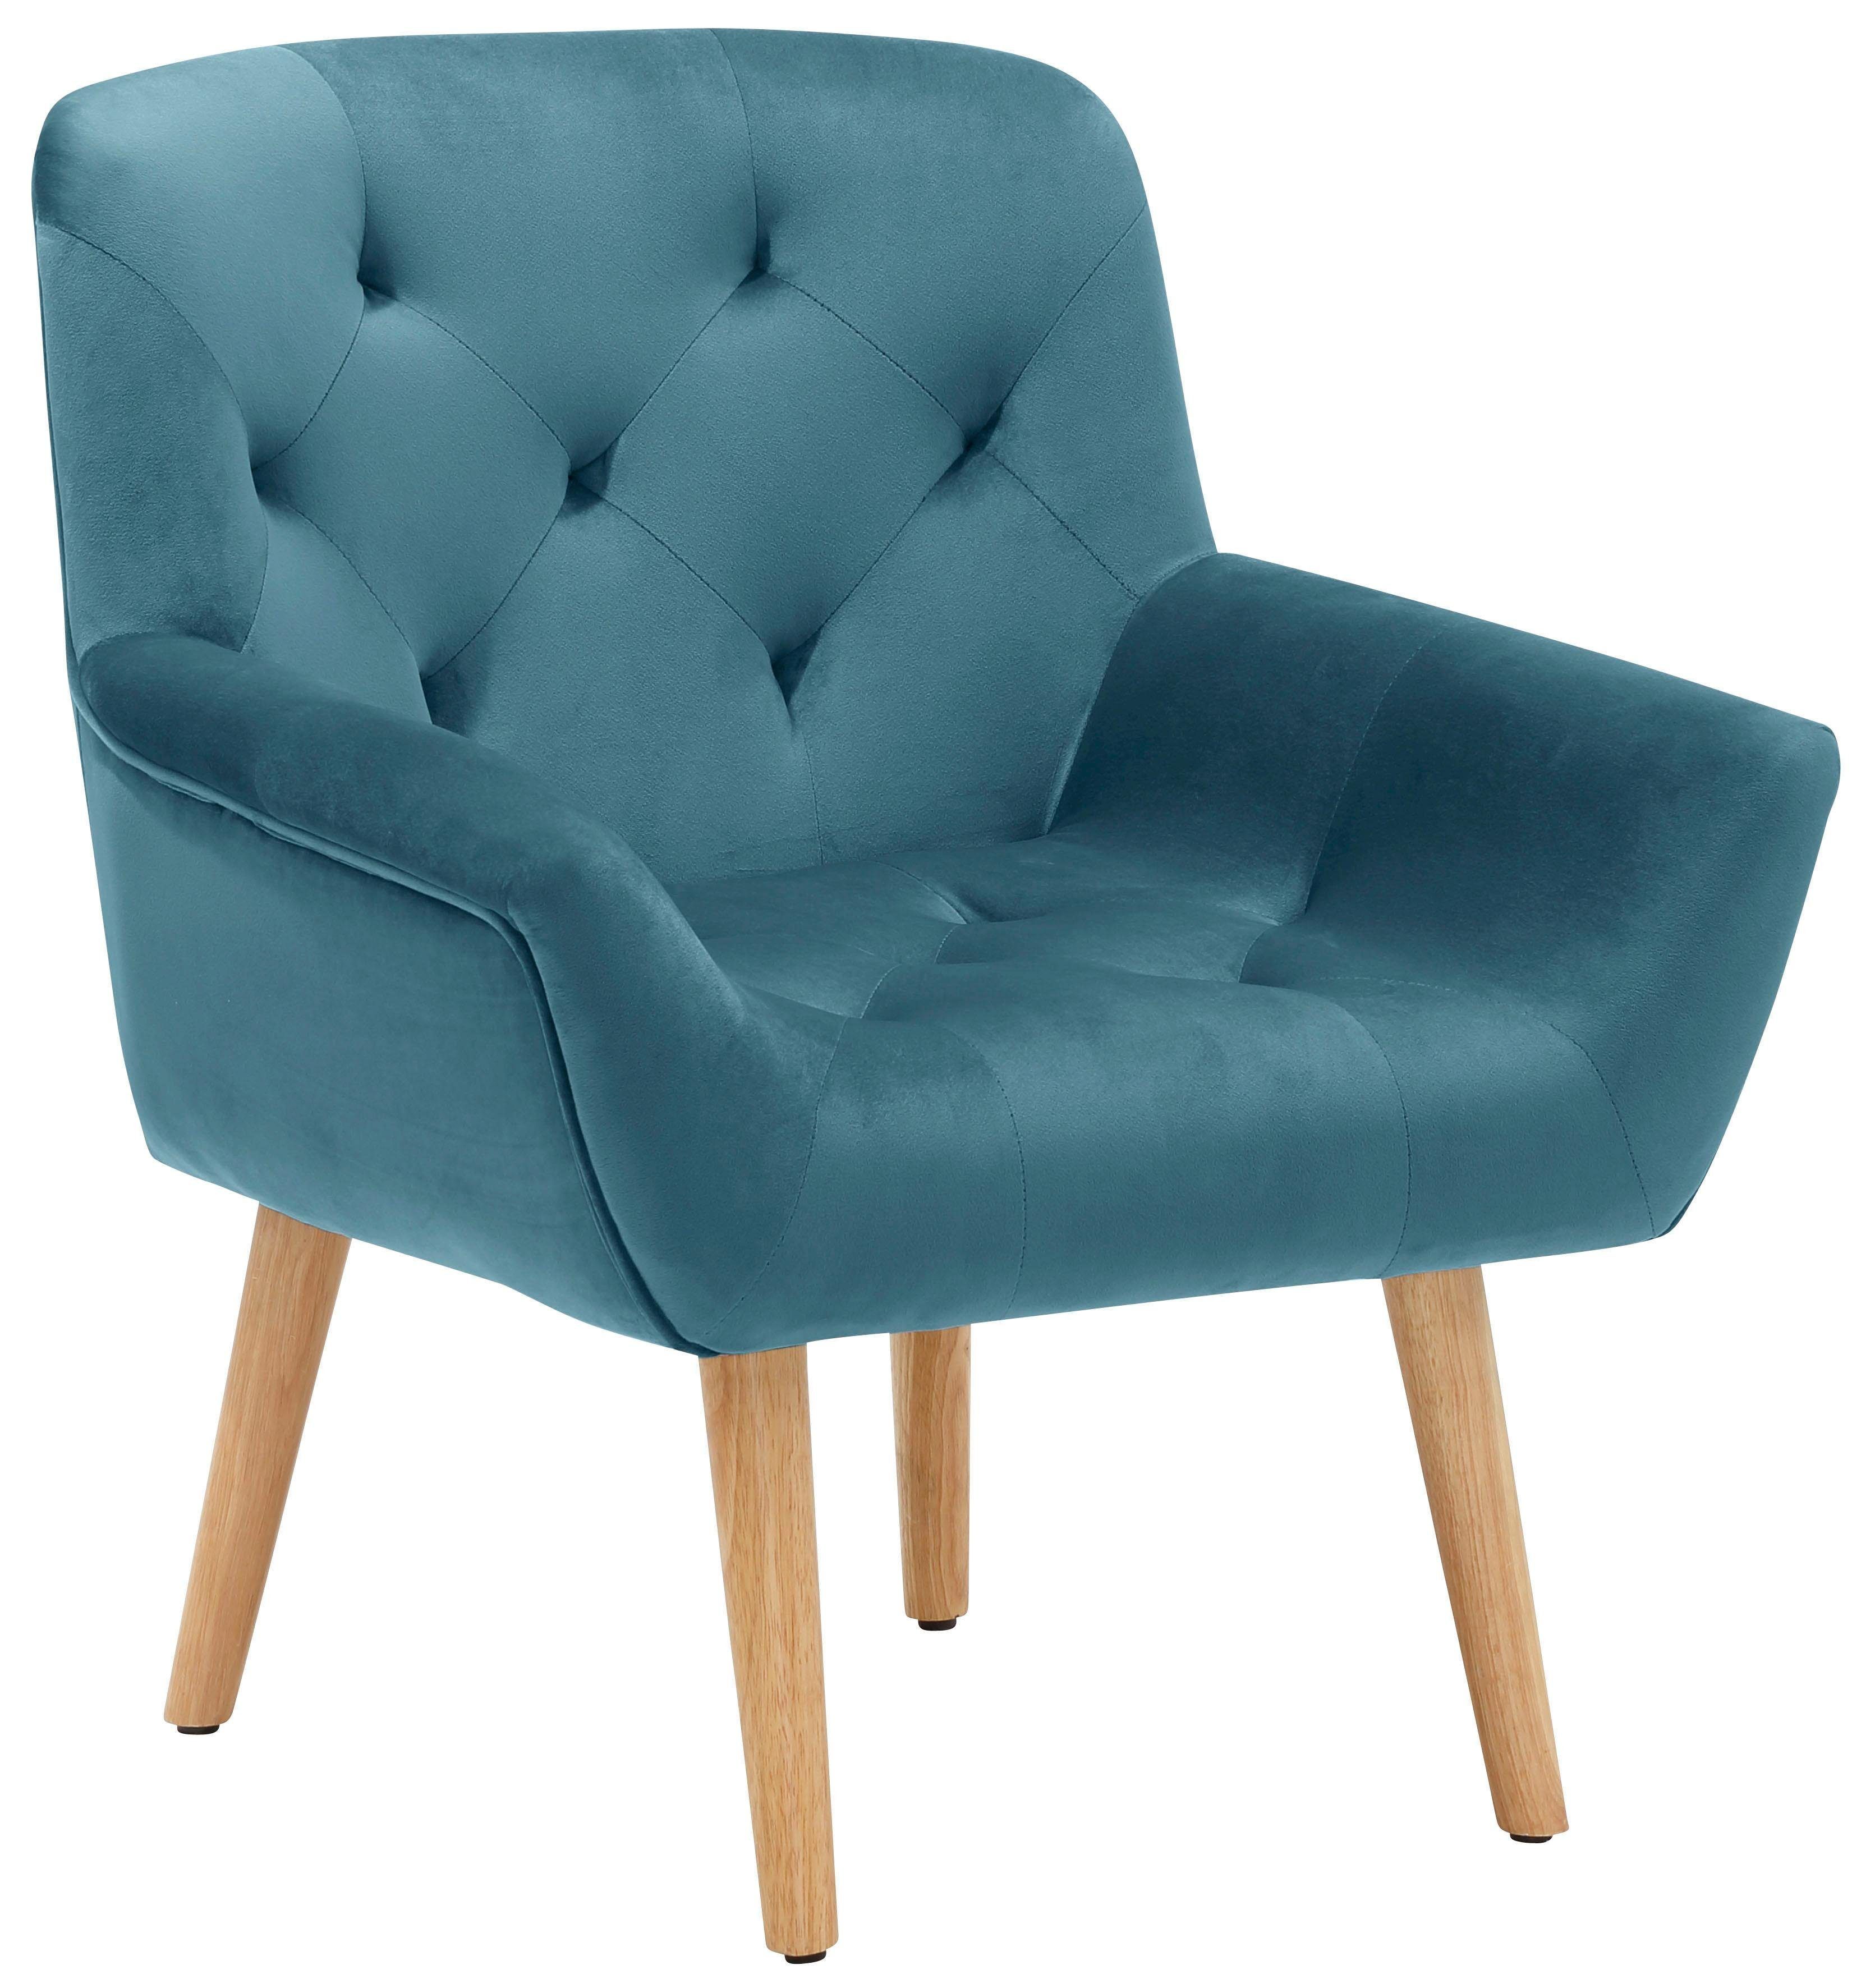 Home affaire Sessel Sami, aus schönem weichen Velvet Bezug und Knopfsteppung auf der Sitz- und Rückenfläche, Sitzhöhe 40 cm